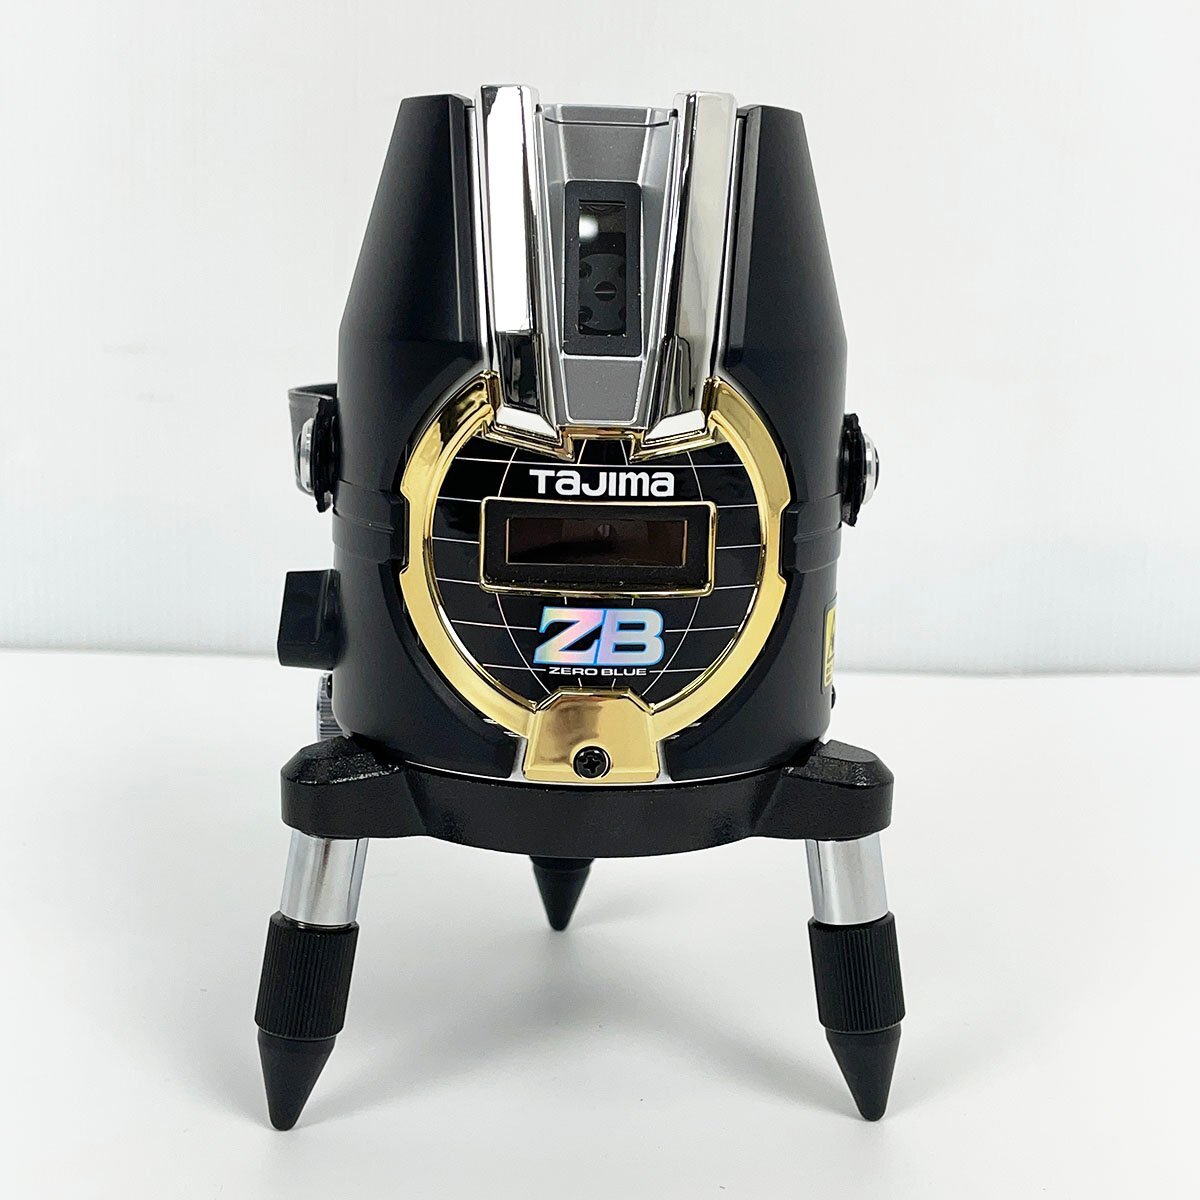 Tajima タジマ レーザー墨出し器 ZERO BLUE ジンバルKY 乾電池専用 ZEROB-KY 受光器 RCV-G エレベーター三脚 1500 ELV-150 セット [R13155]_画像2